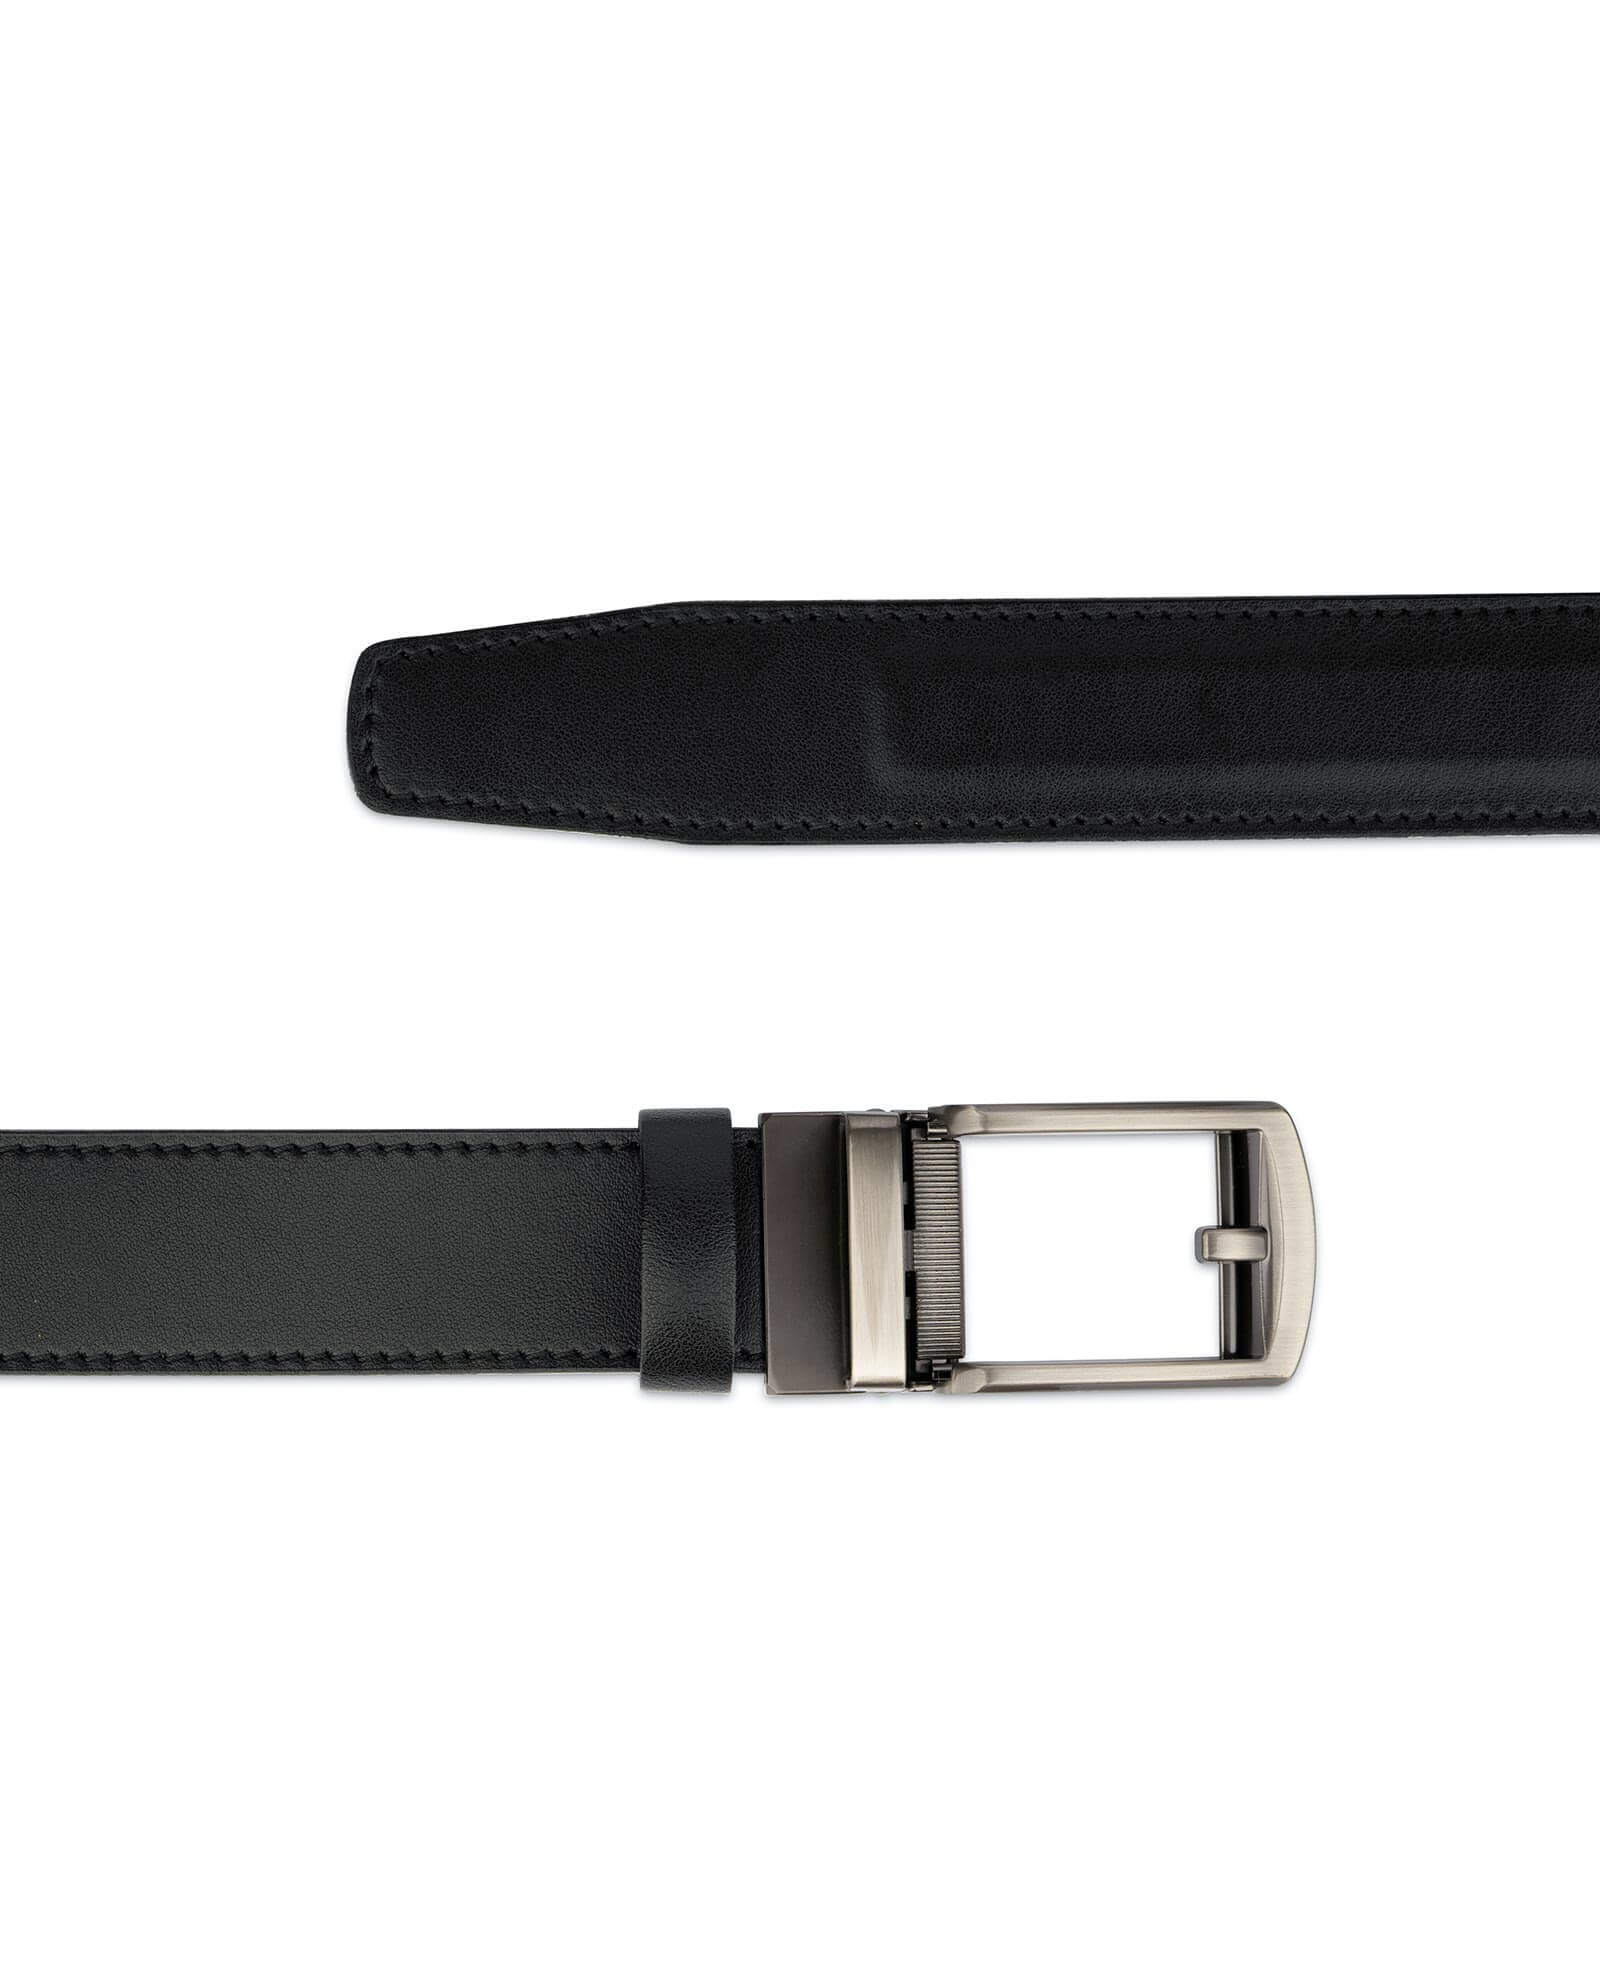 Buy Mens Ratchet Belt With Classic Buckle | LeatherBeltsOnline.com